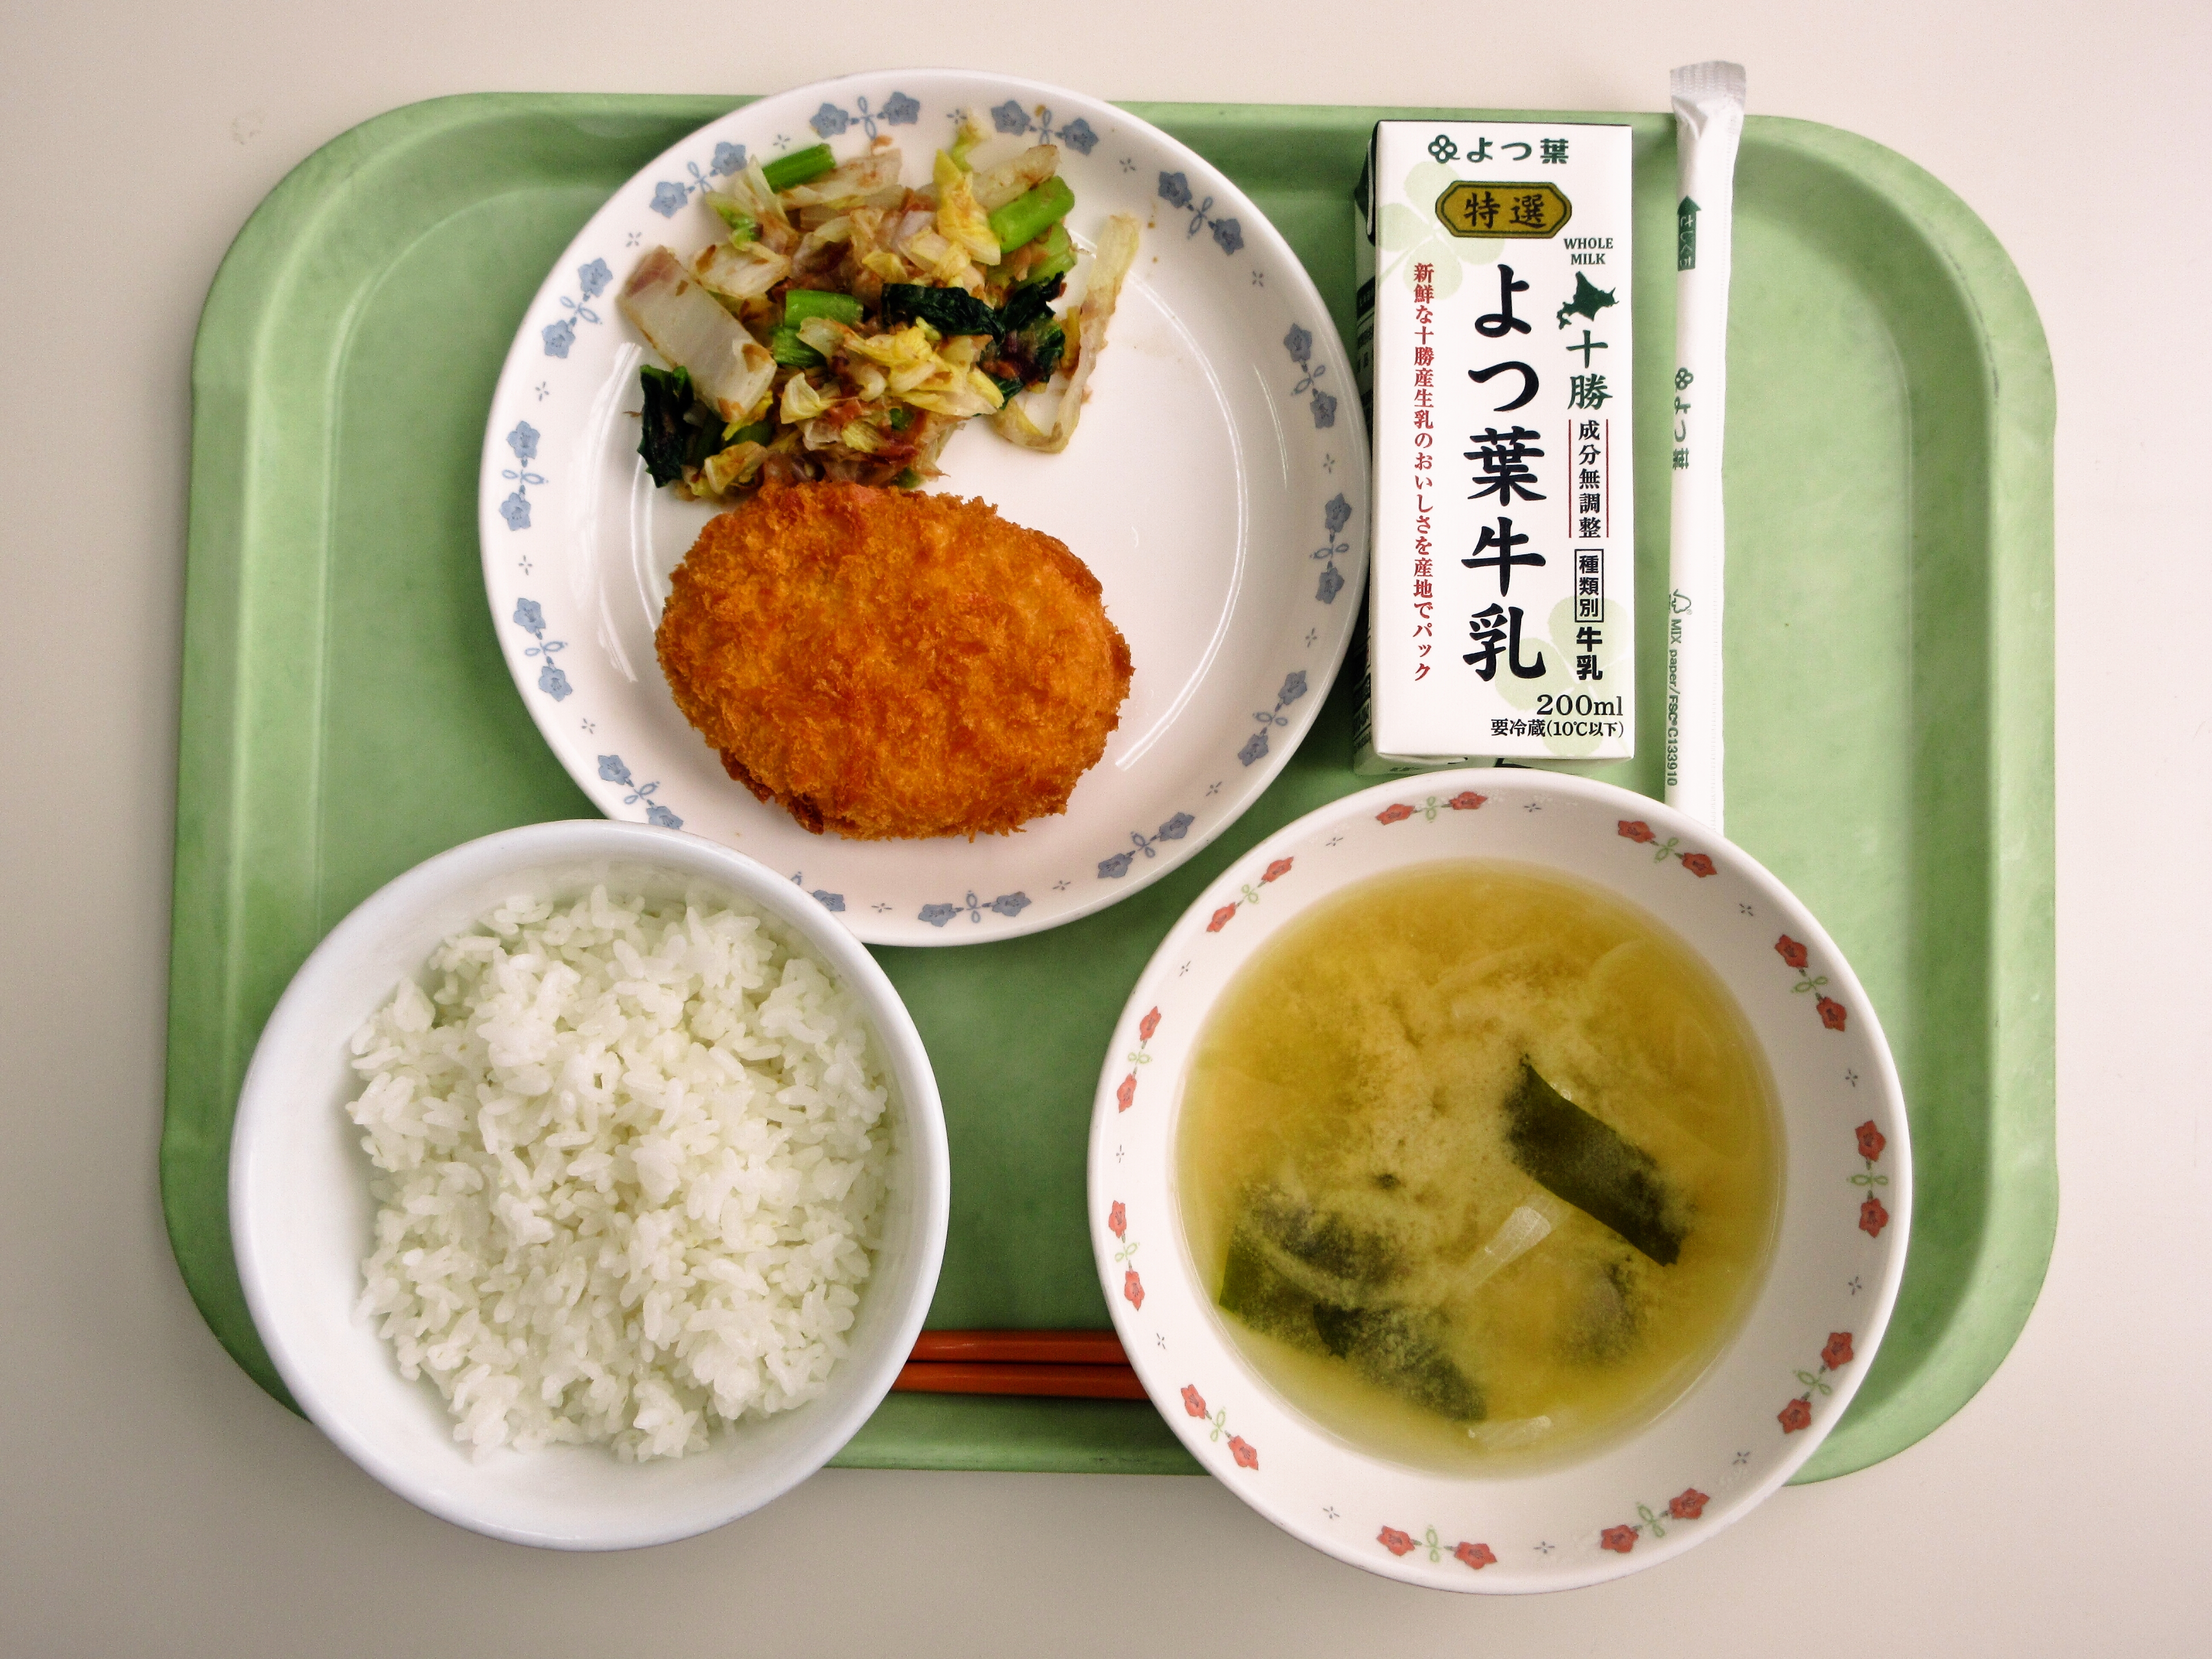 ごはん、みそ汁（玉ねぎ・わかめ）、士幌の野菜コロッケ、白菜の梅がつお和え、牛乳